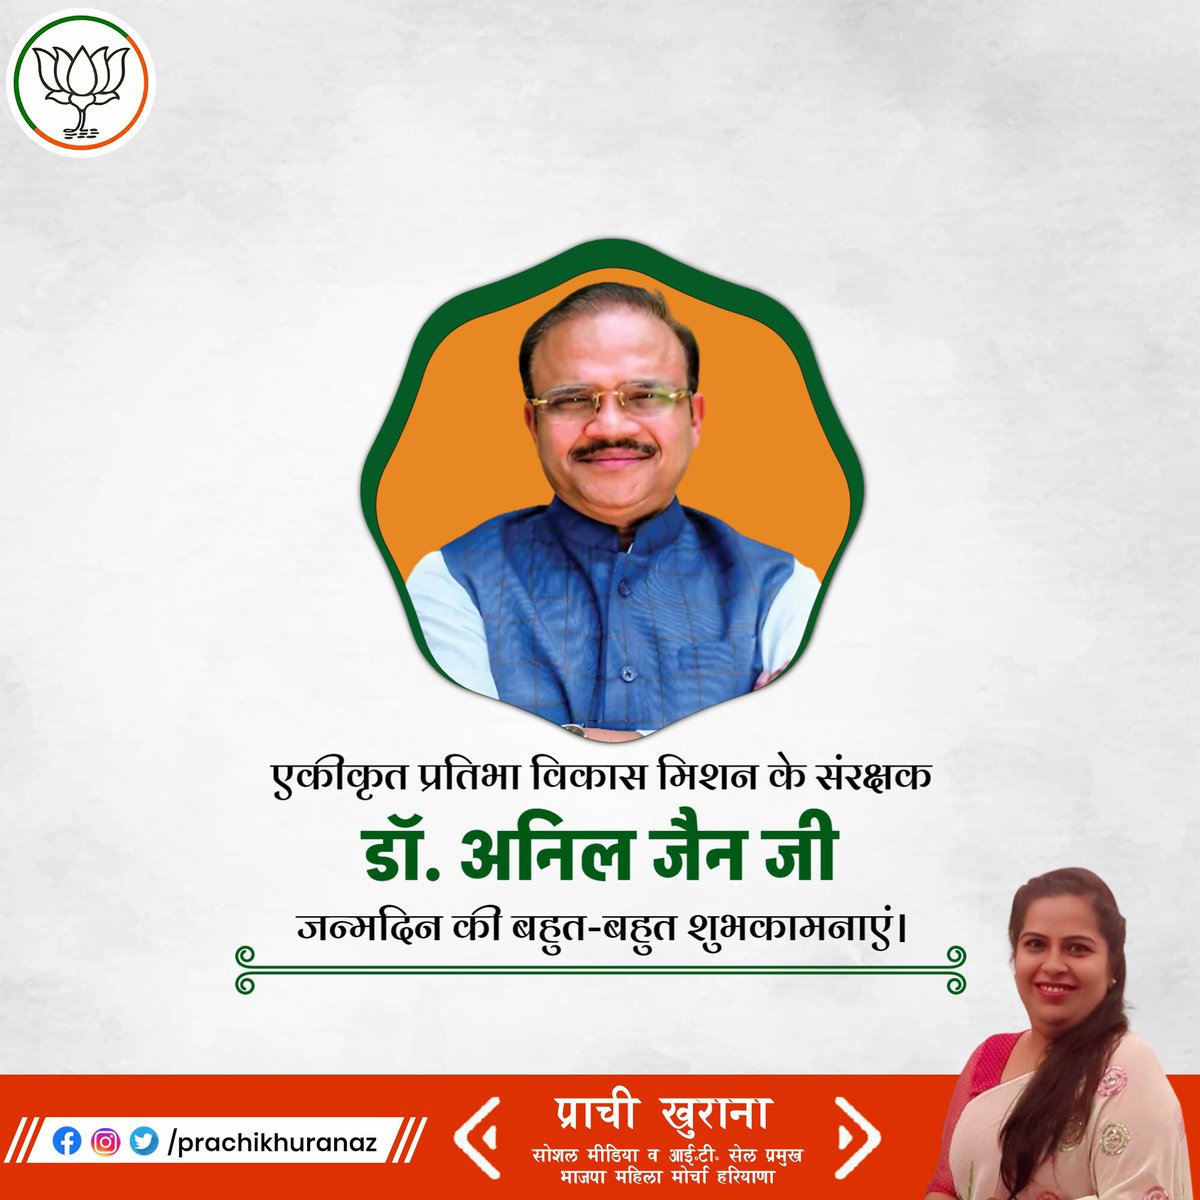 भाजपा के वरिष्ठ नेता, राष्ट्रीय महासचिव एवं माननीय सांसद (राज्यसभा) @aniljaindr जी को जन्मदिन की हार्दिक बधाई एवं शुभकामनाएँ।

प्रभु श्रीराम से आपके उत्तम स्वस्थ, सुखी और दीर्घायु जीवन की कामना करती हूं। 

#DrAnilJain